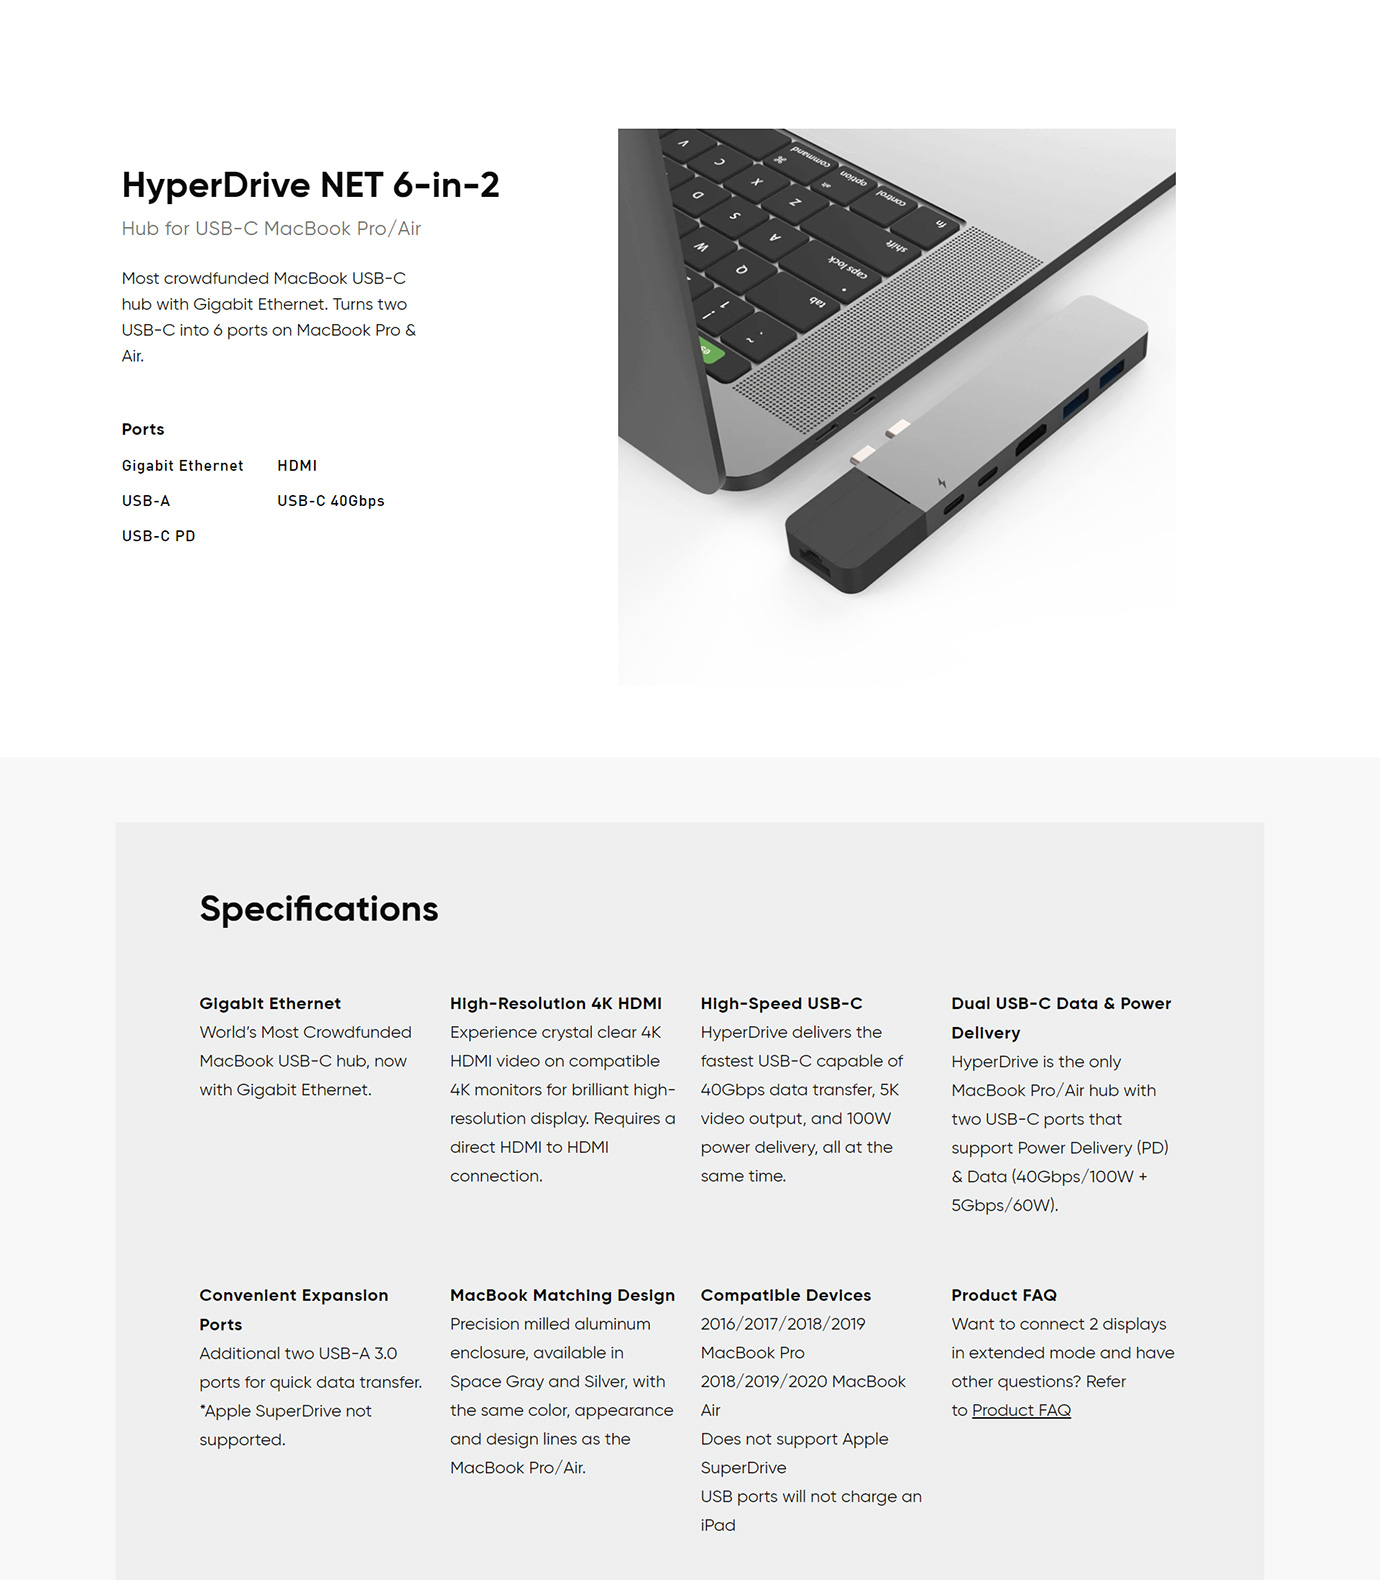 HyperDrive NET